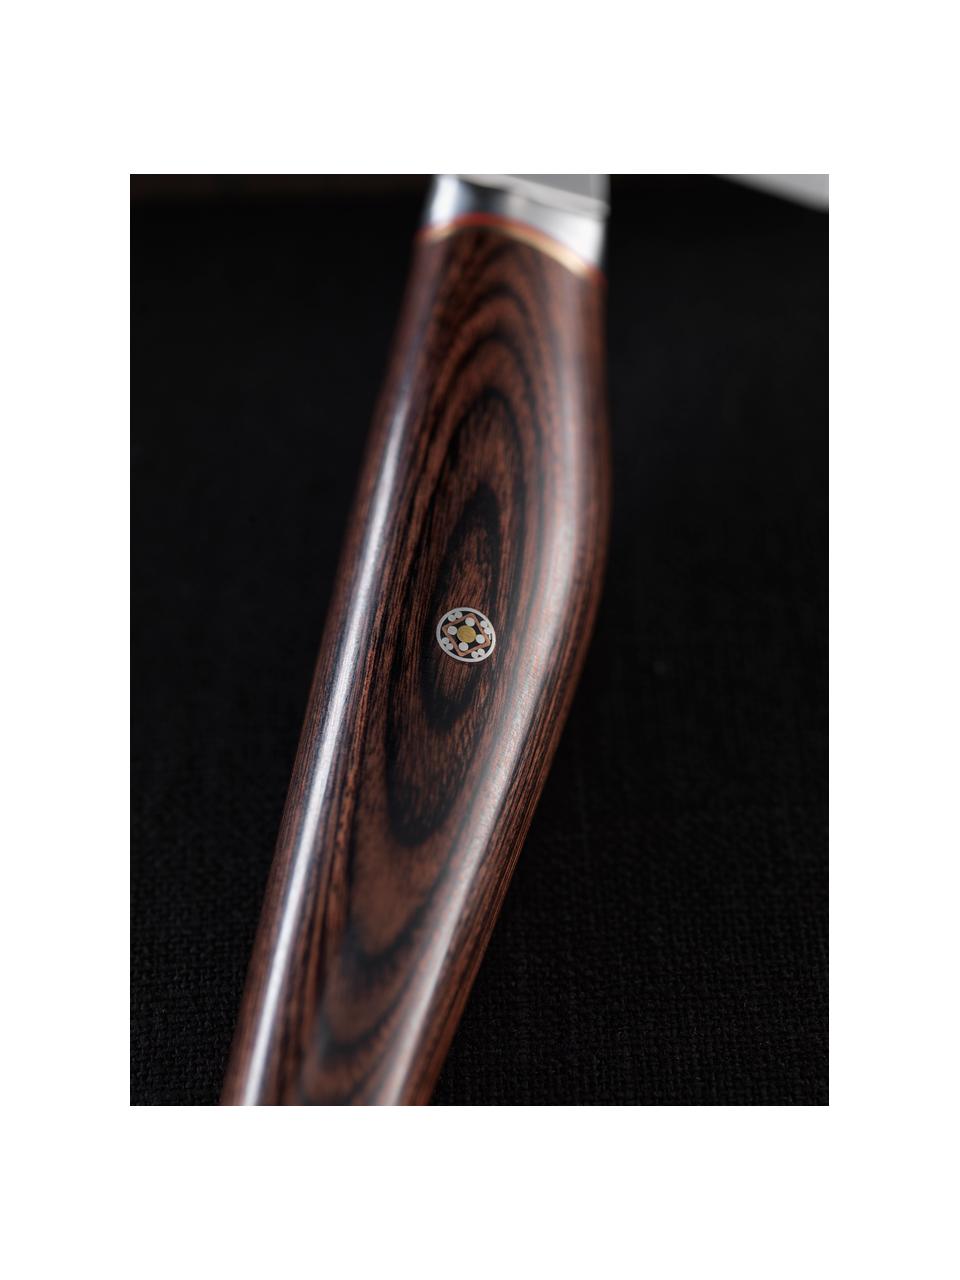 Cuchillo Sujihiki Miyabi, Plateado, madera oscura, L 38 cm